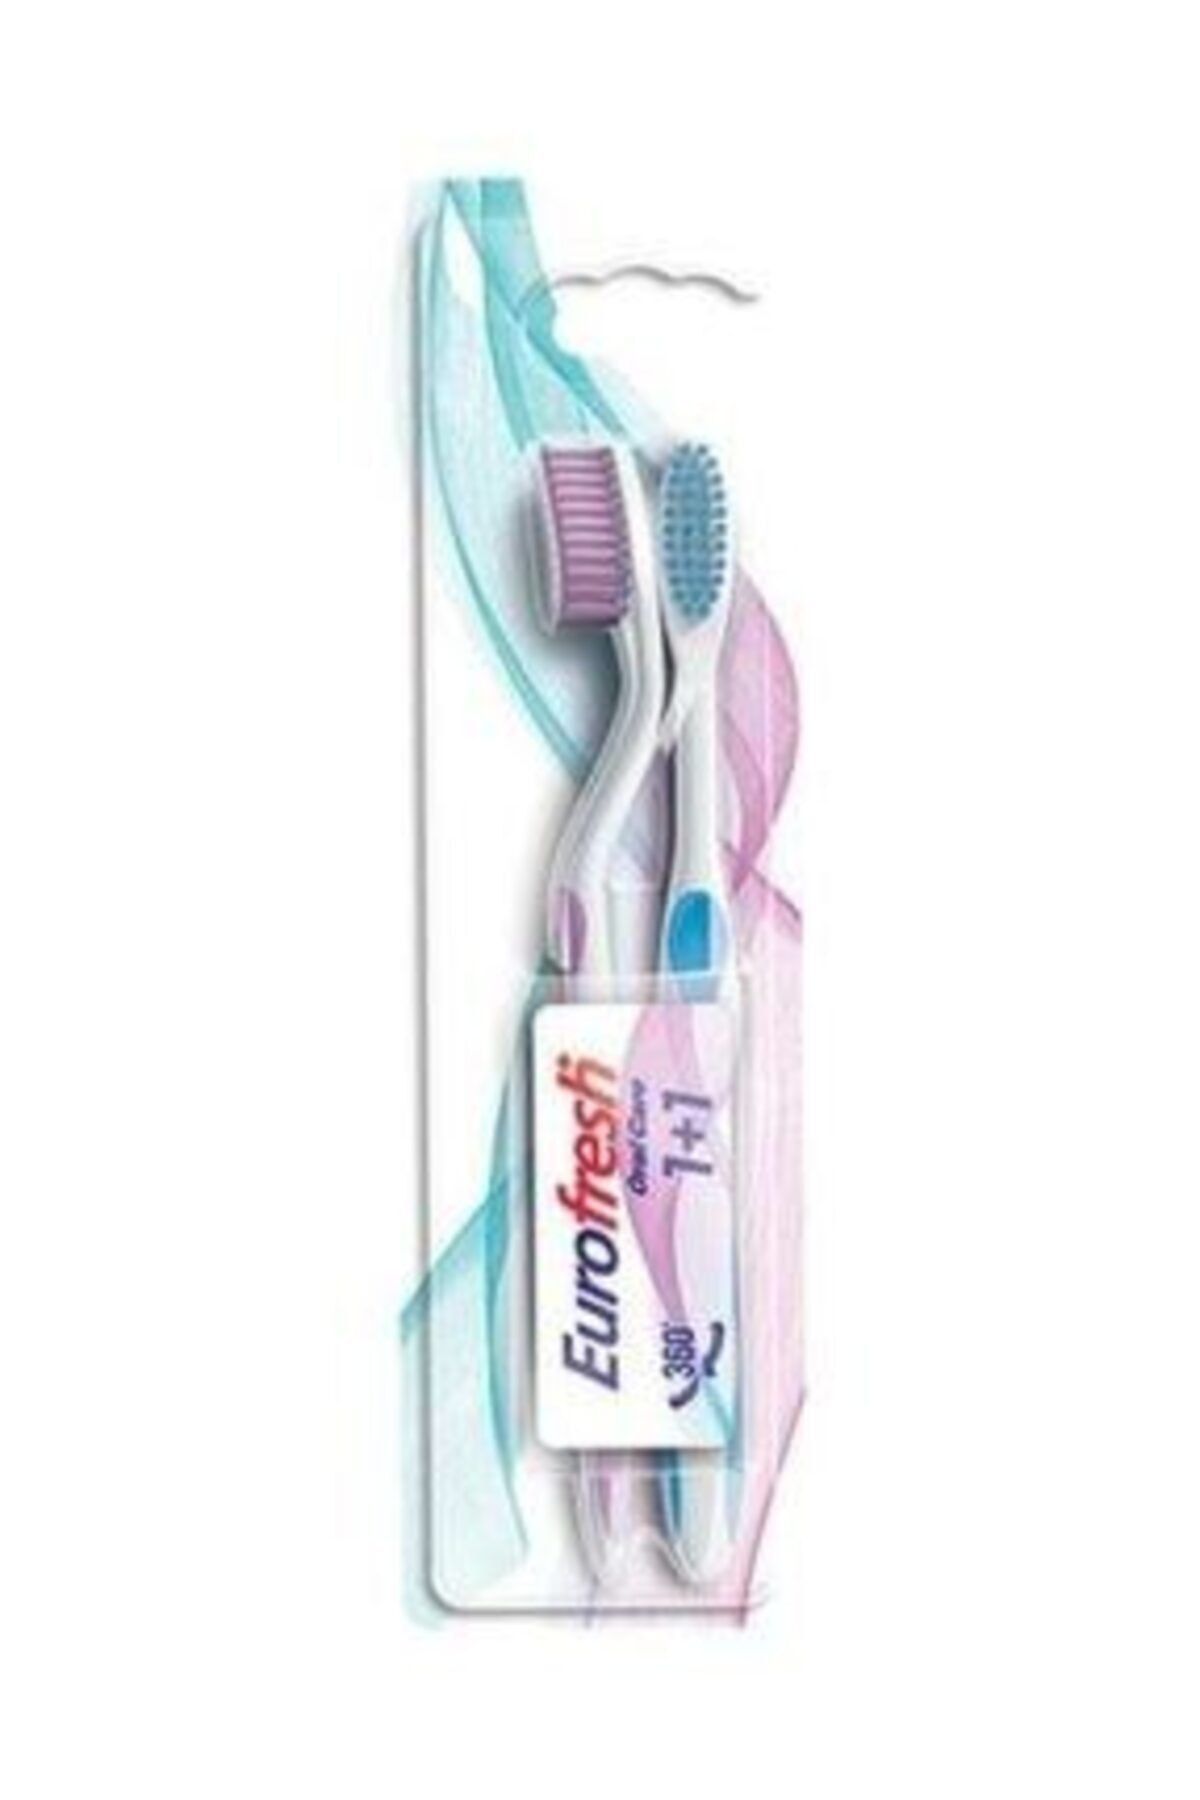 Farmasi Eurofresh 2li Diş Fırçası Pembe Ve Mavi